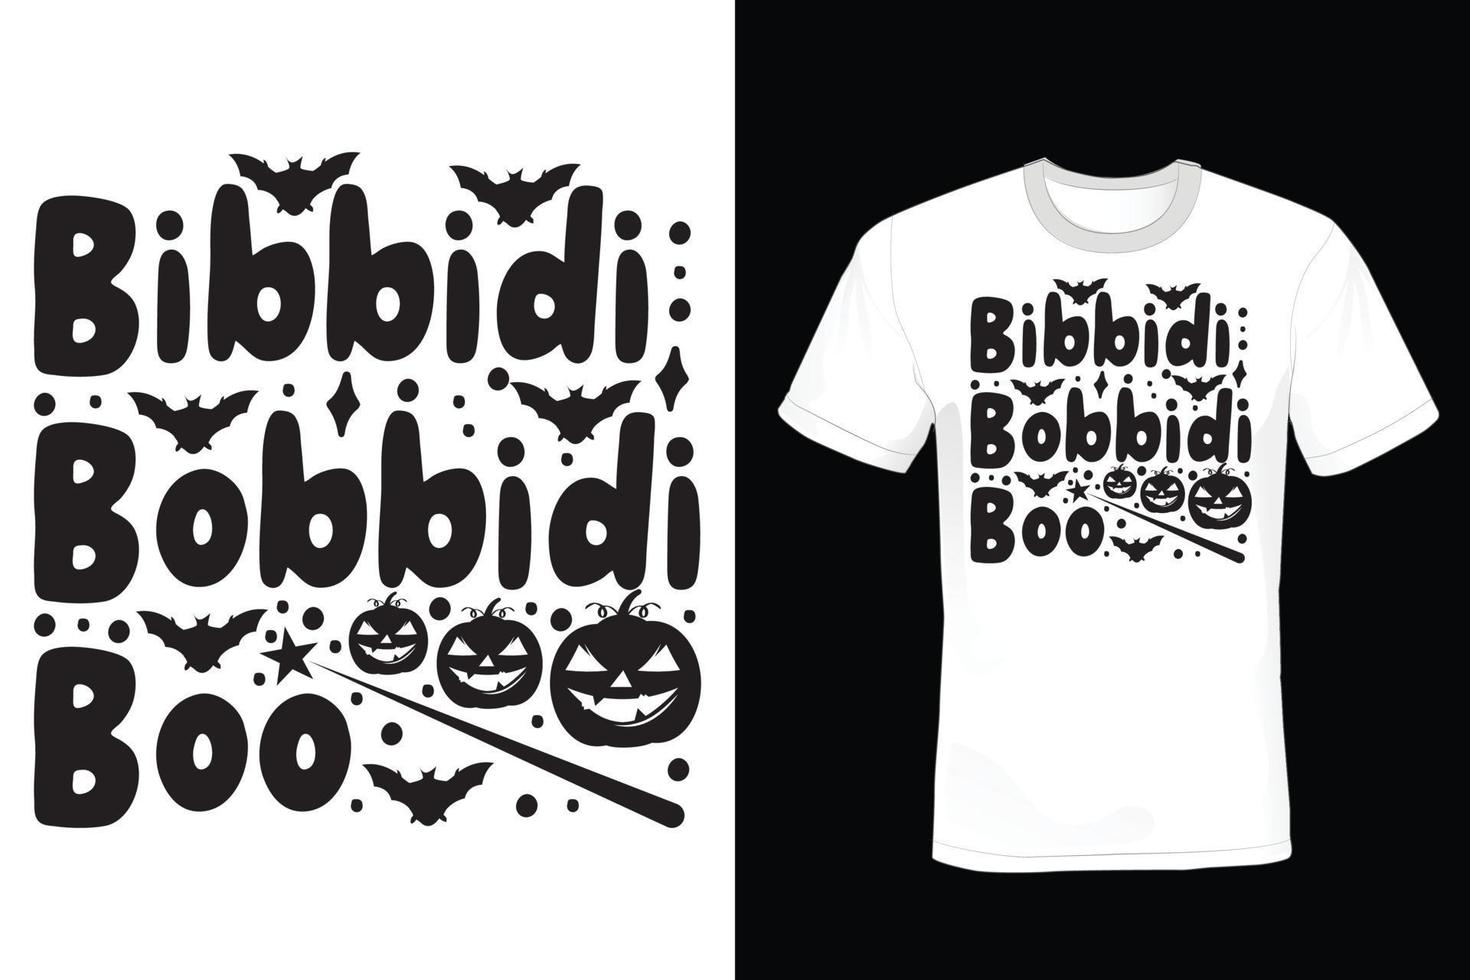 diseño de camiseta de halloween, vintage, tipografía vector